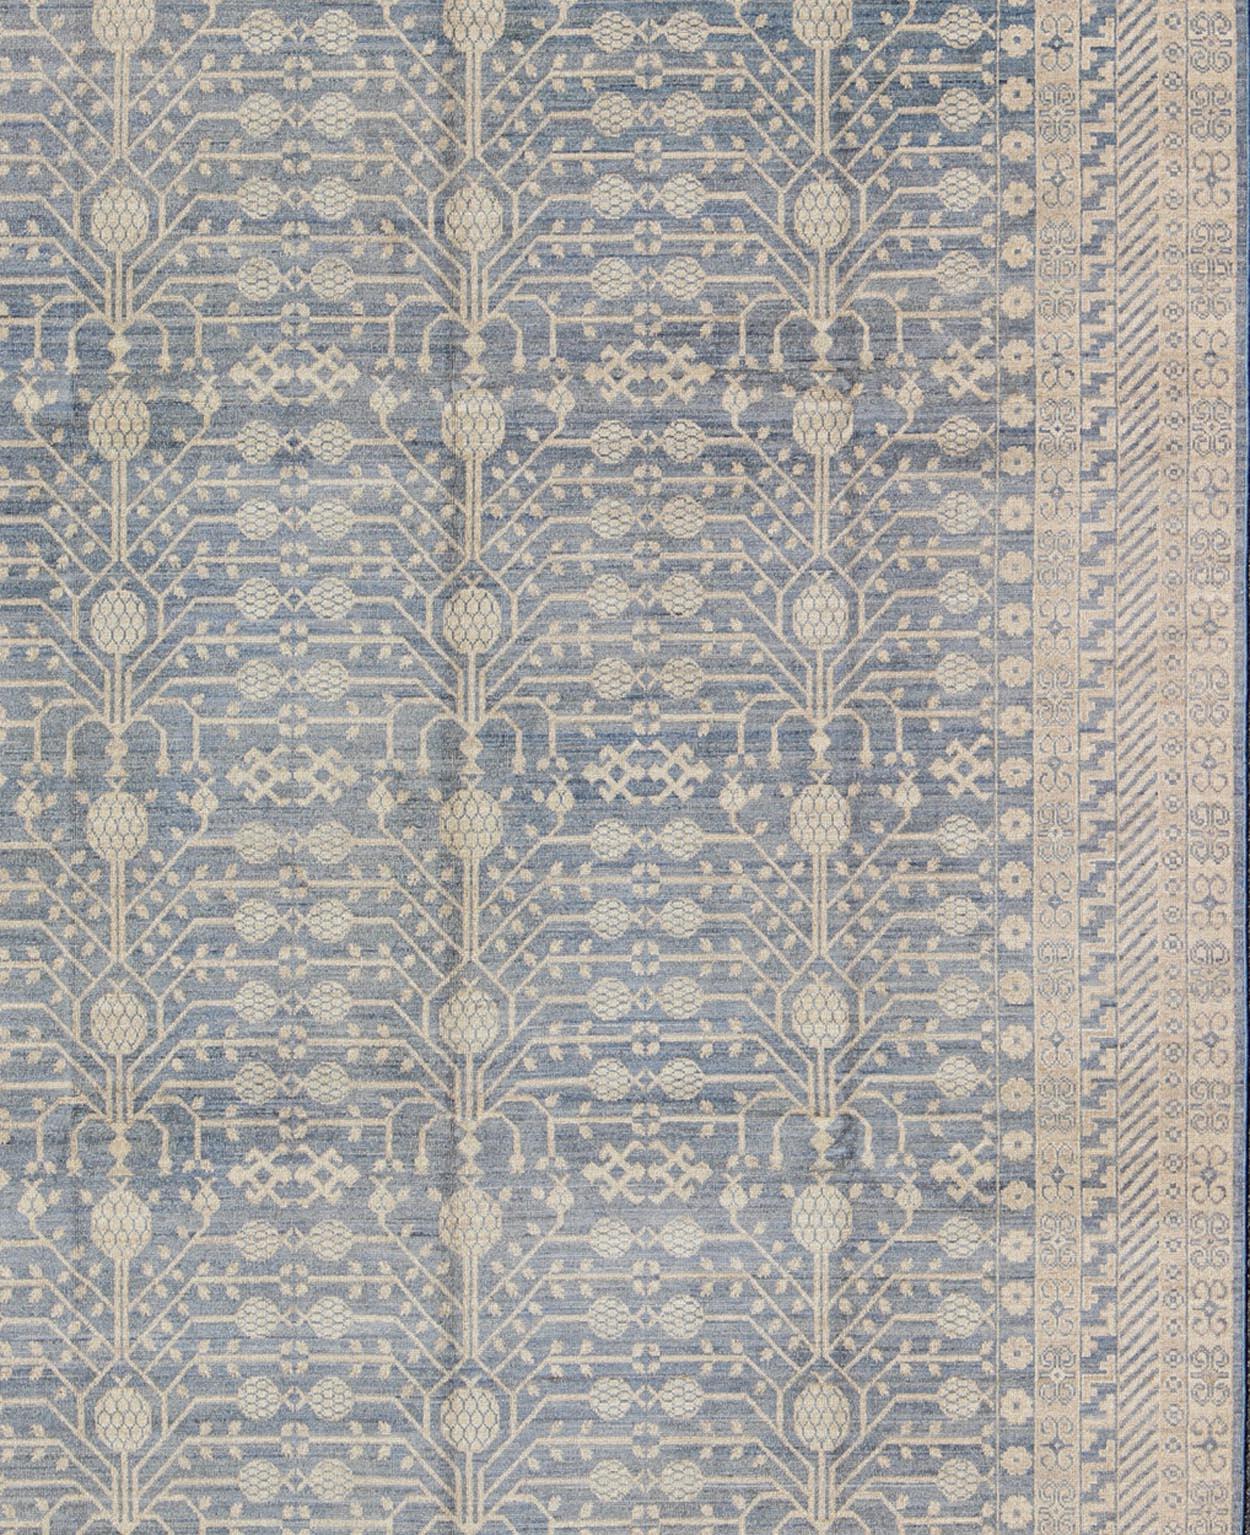 Dieser Khotan weist ein Allover-Muster auf, das von einem sich wiederholenden Muster in der Bordüre mit asiatischen Motiven flankiert wird. Das gesamte Stück ist in hellen Tönen gehalten, was es zu einem vielseitigen Teppich macht, der sich gut für